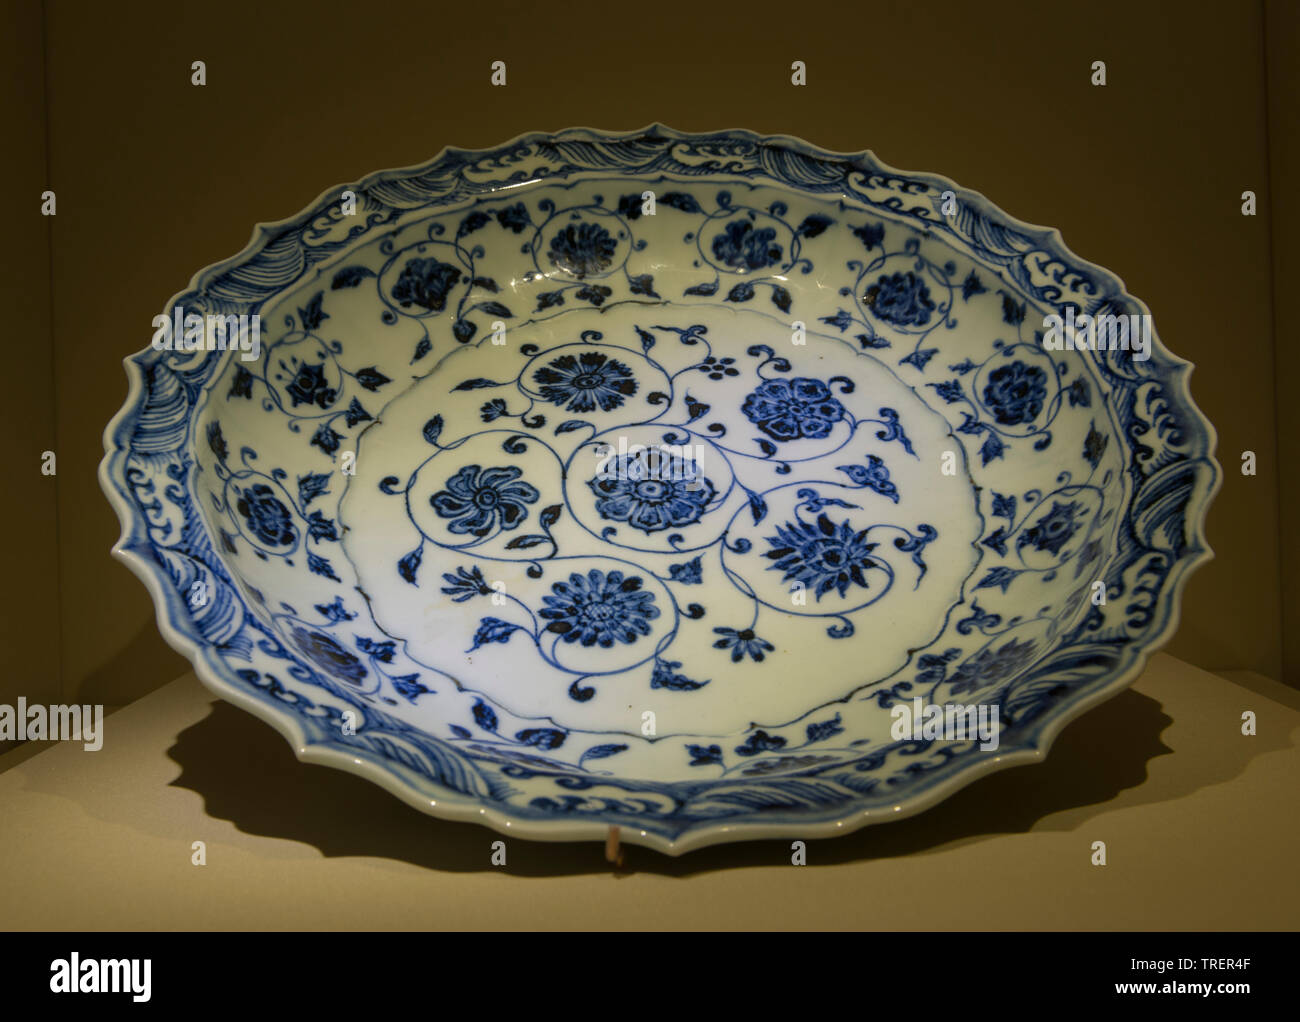 Bianco e blu in piastra con fiore scorre il design dell'Yongle era. Periodo Yongle, dinastia Ming, 1403-1424 CE. Il museo nazionale della Cina Foto Stock